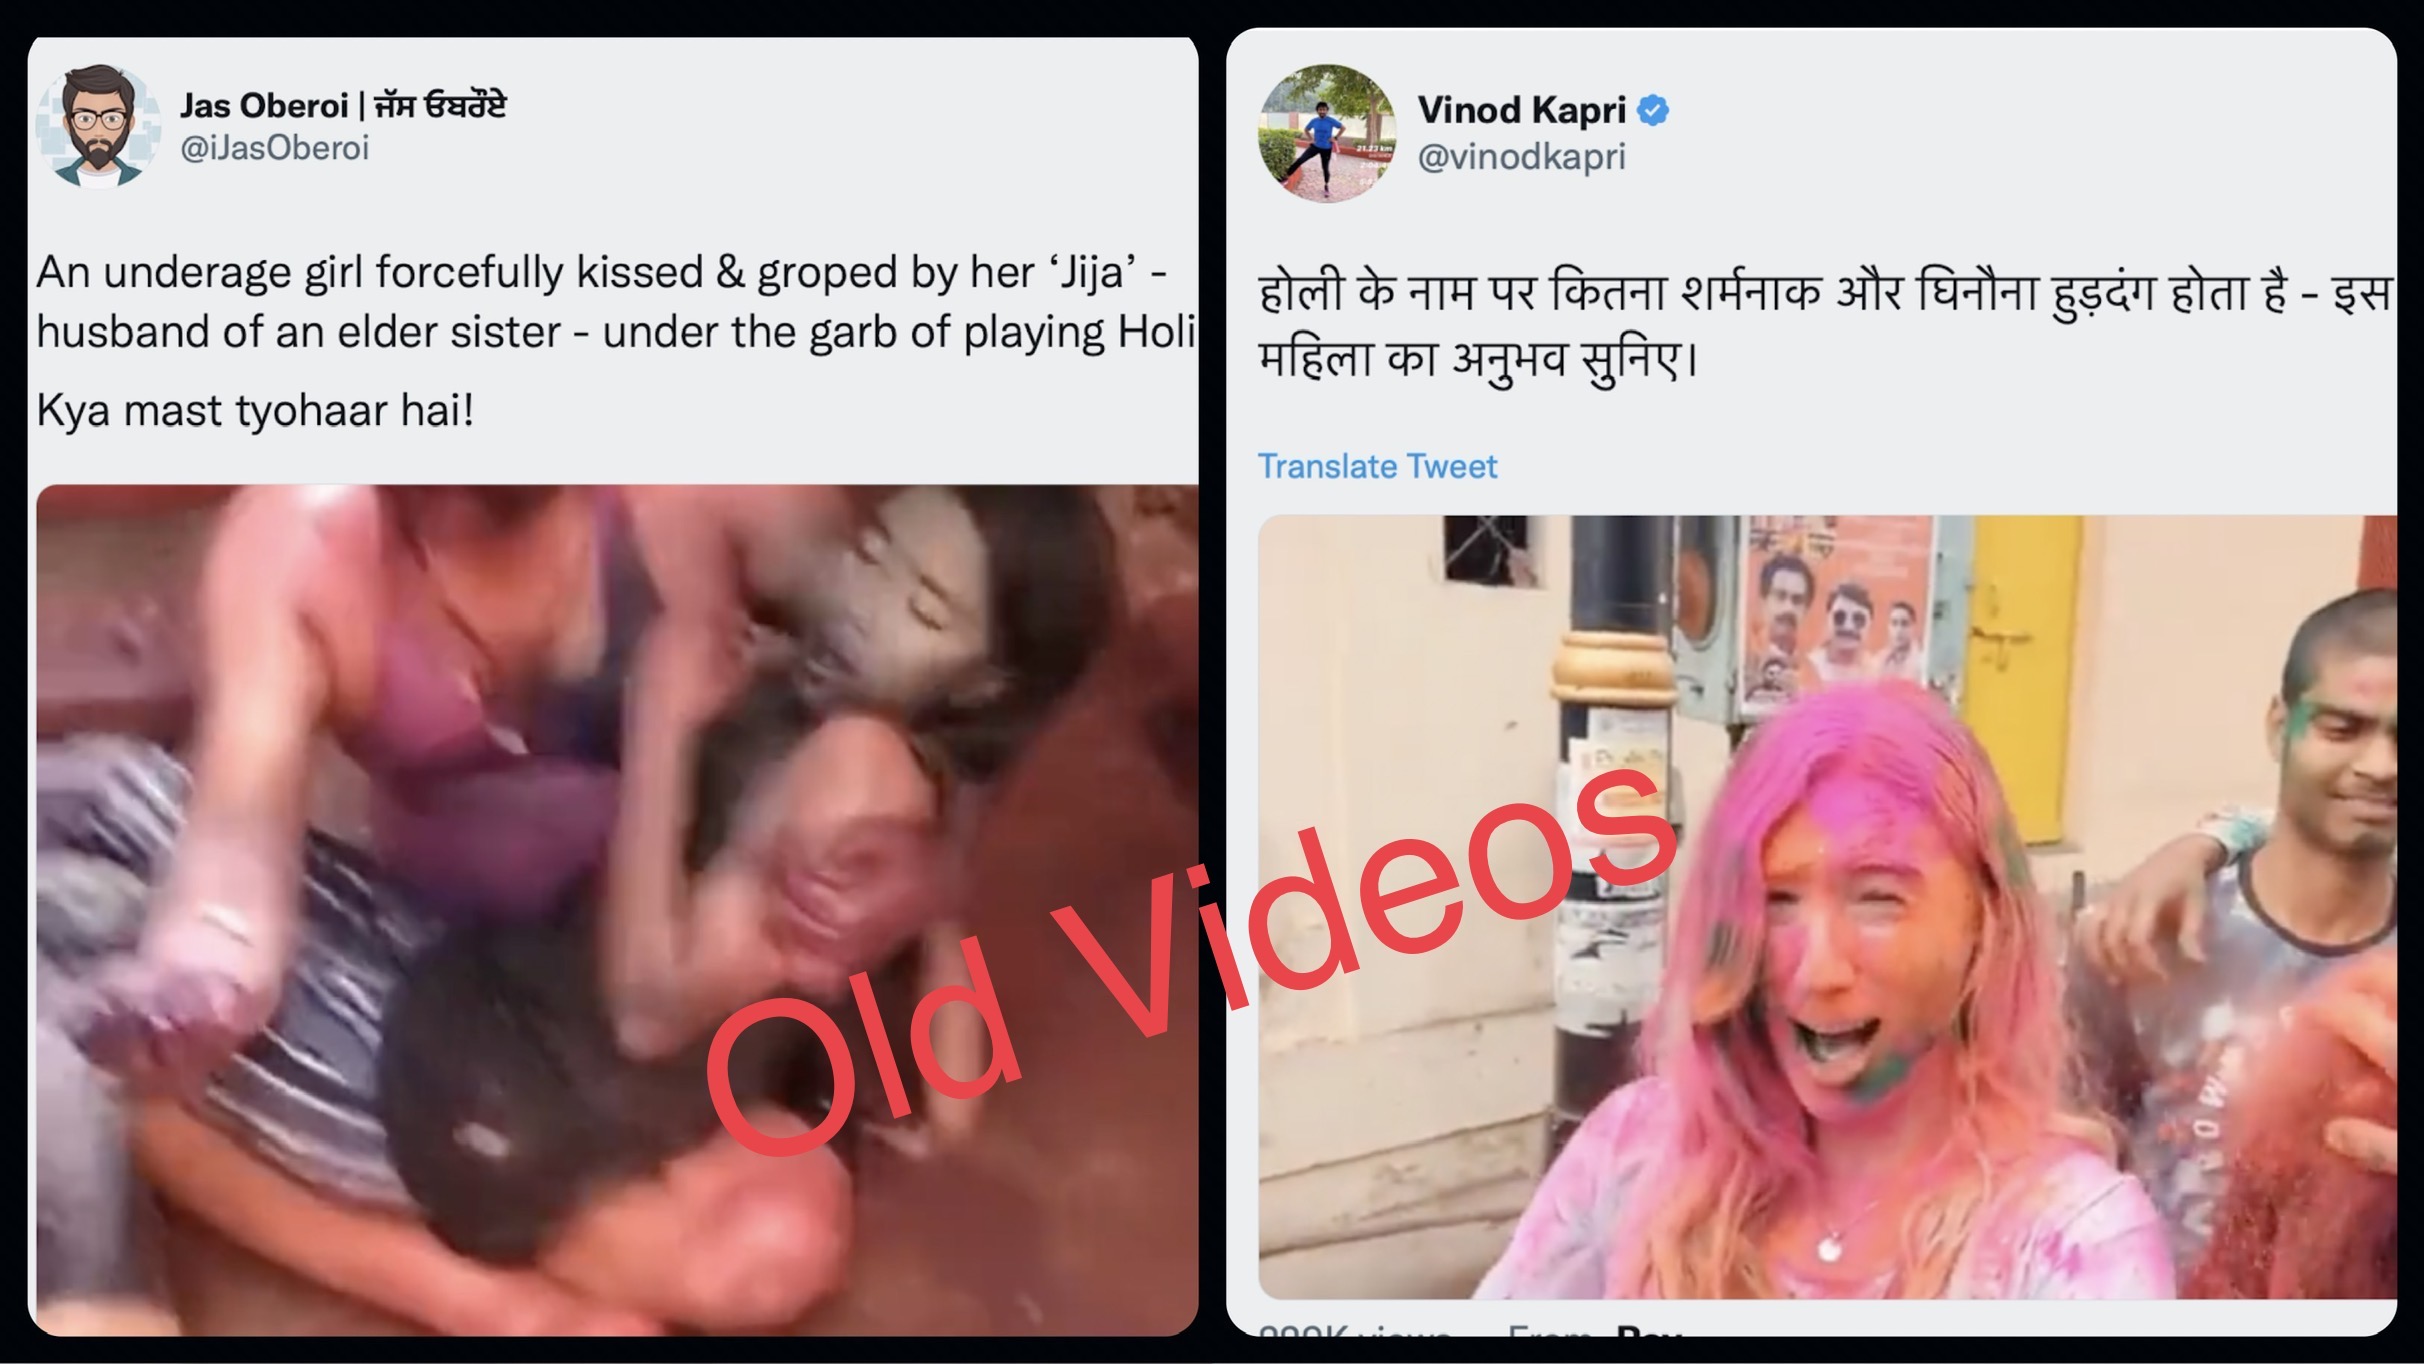 Old videos maligning Hindu festival of Holi in circulation on social media